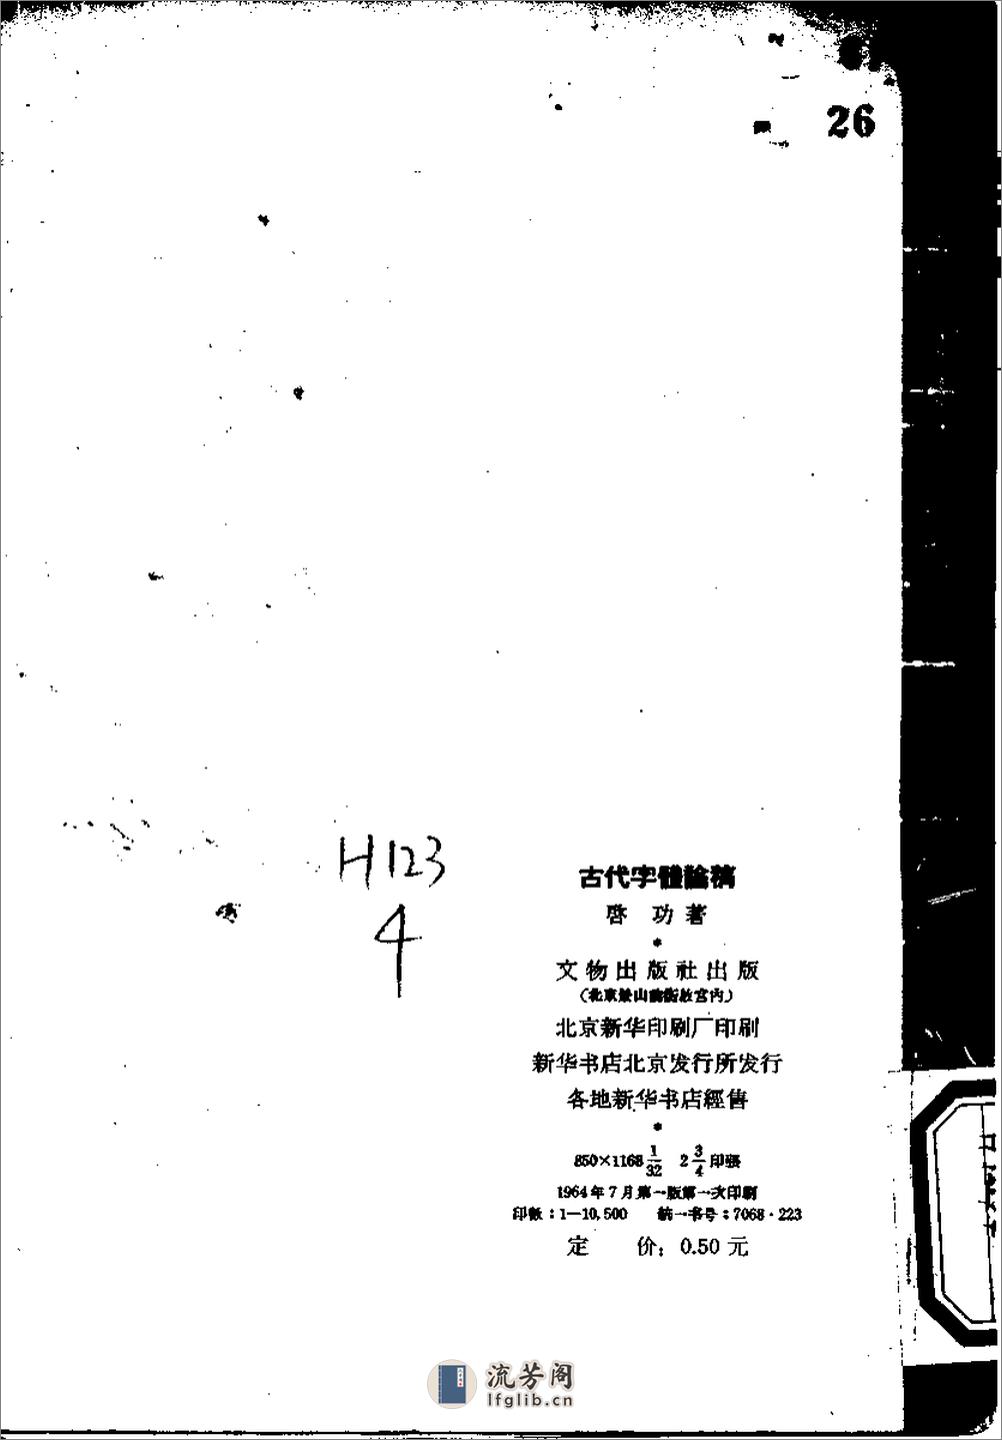 《古代字体论稿》_启功 著_文物出版社 1964年 - 第3页预览图